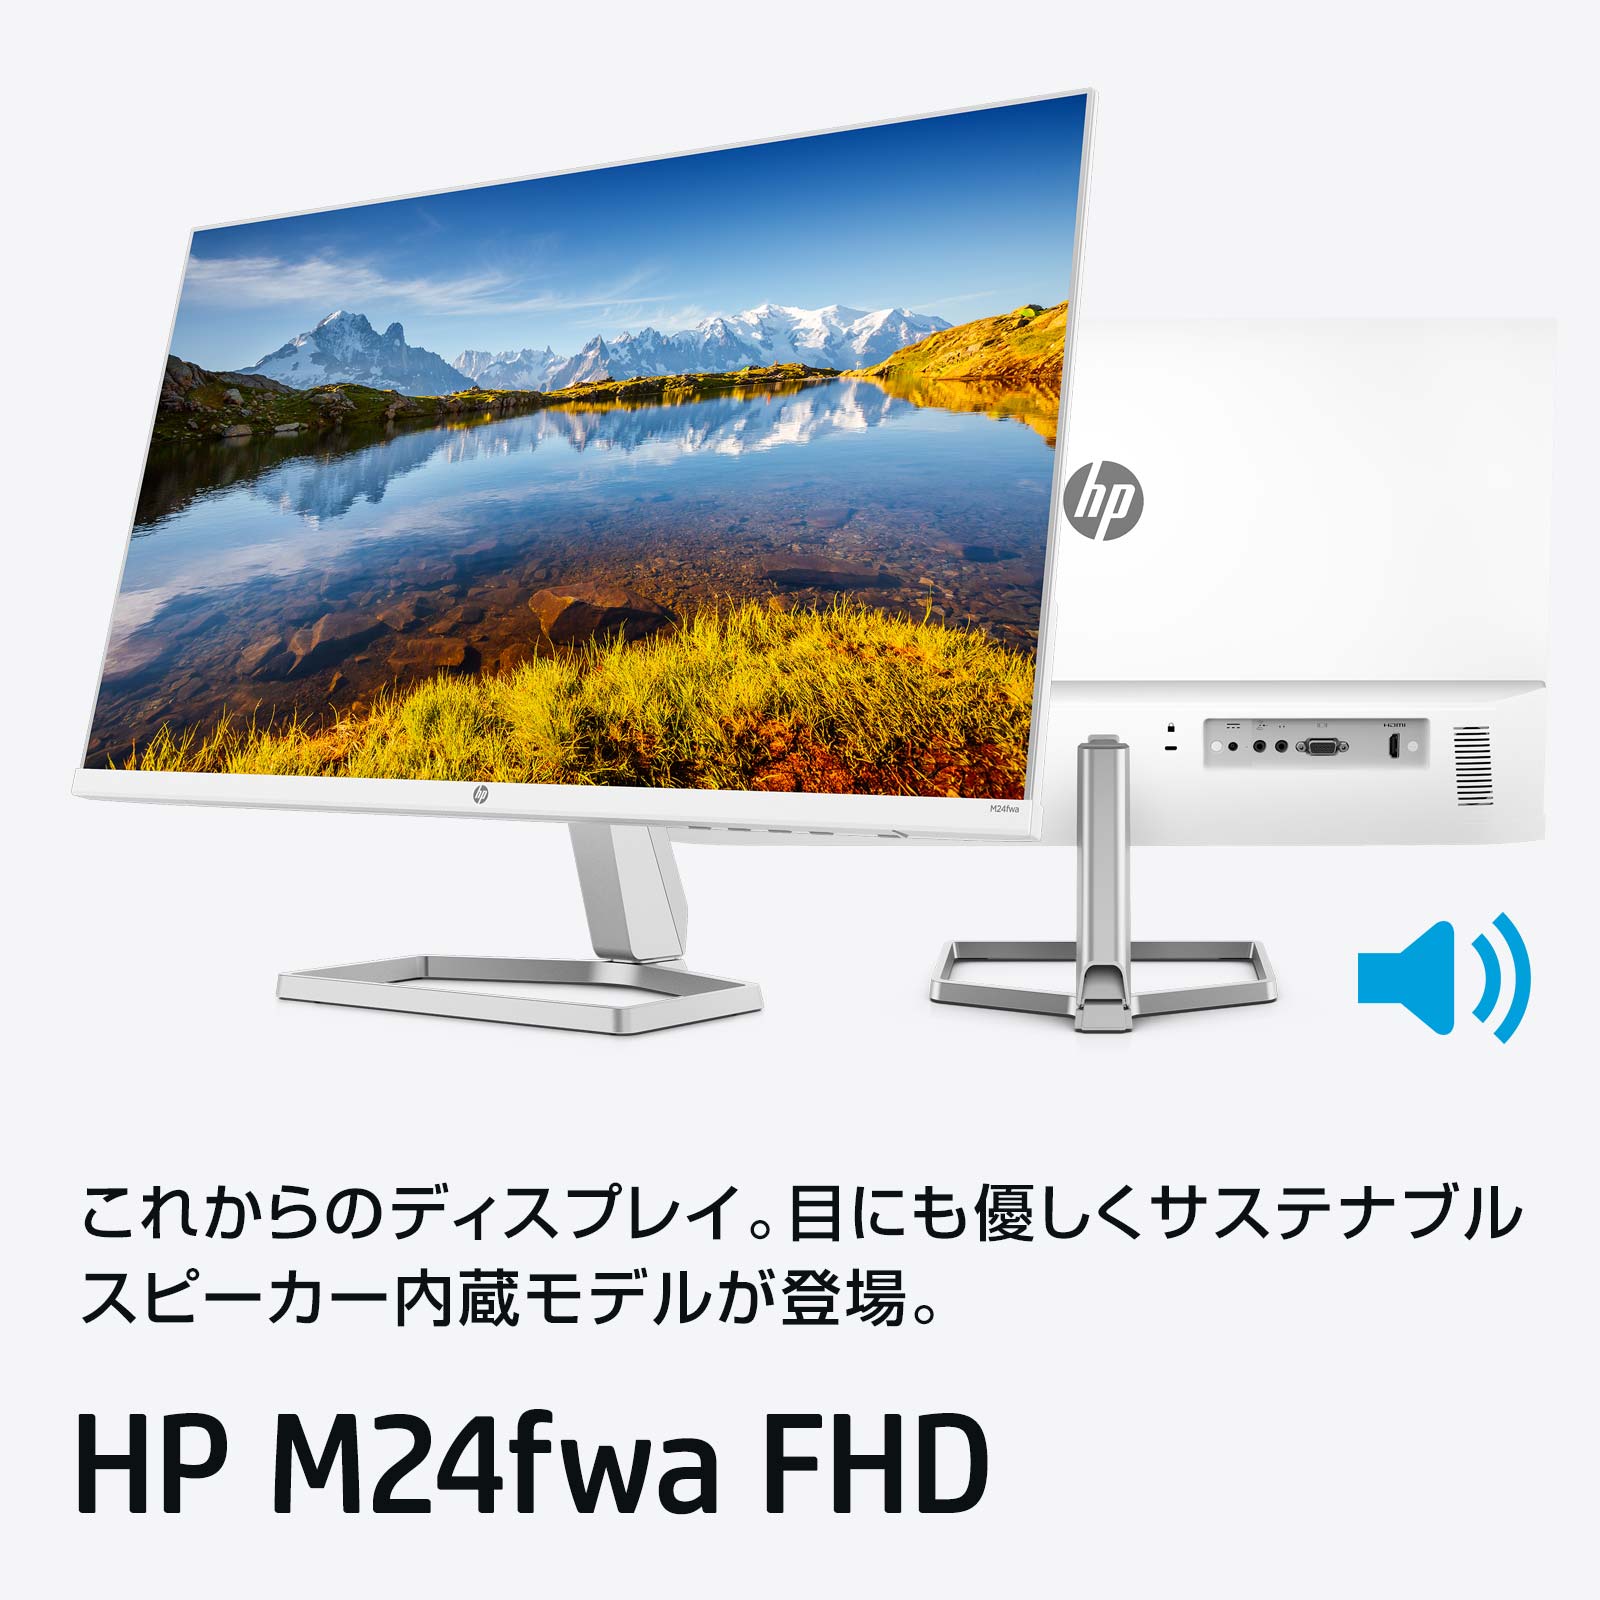 HP M24fwa FHD ディスプレイ(ホワイト・スピーカー付き)